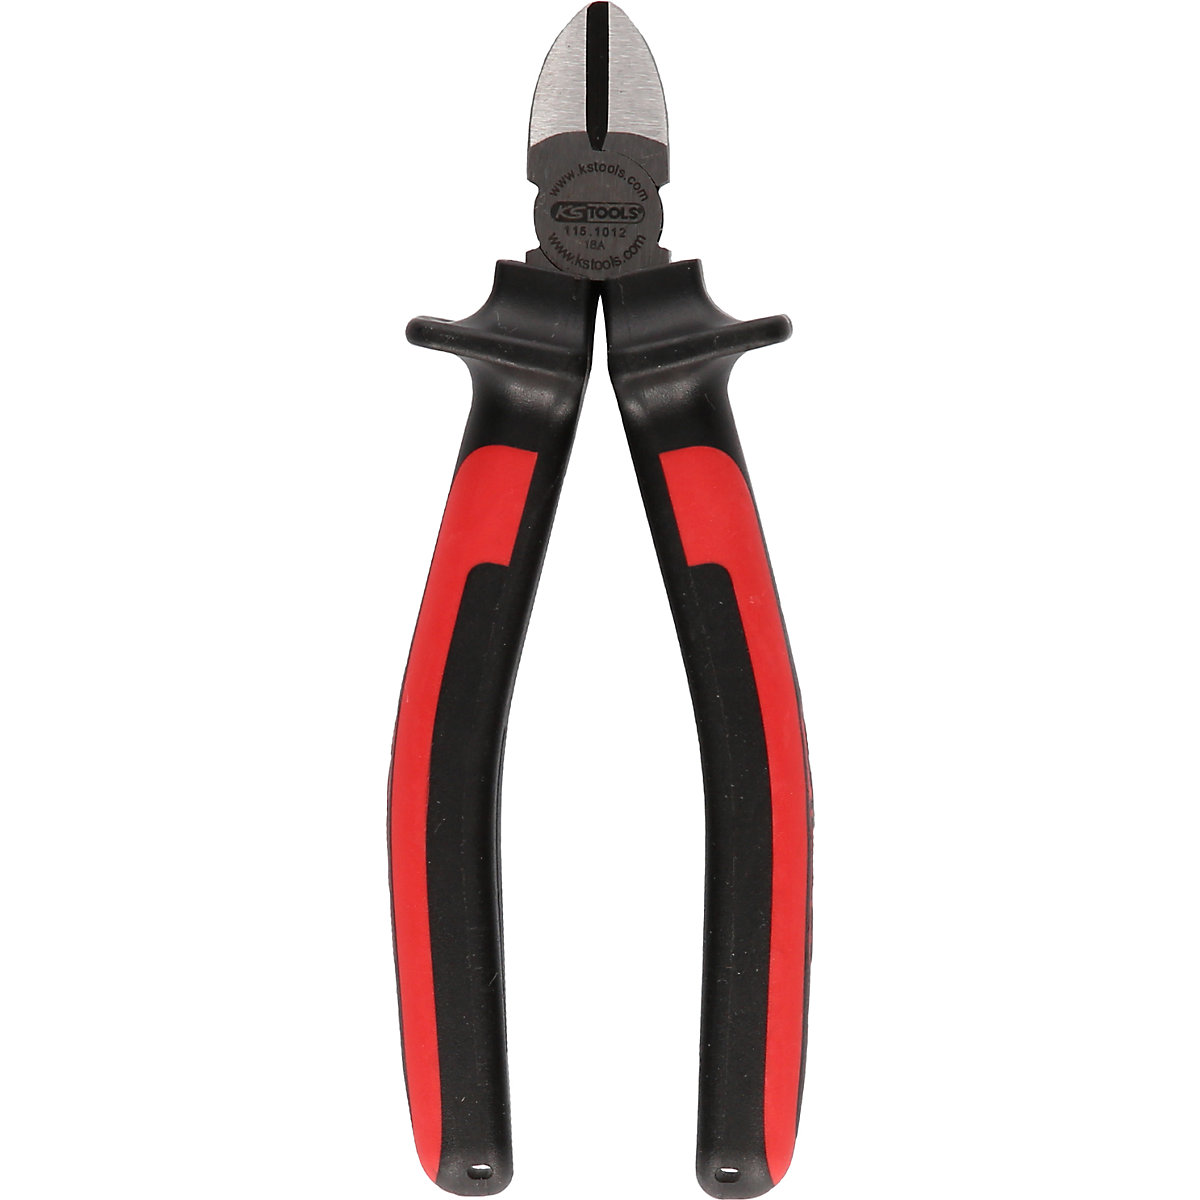 ERGOTORQUE diagonal side cutter - KS Tools